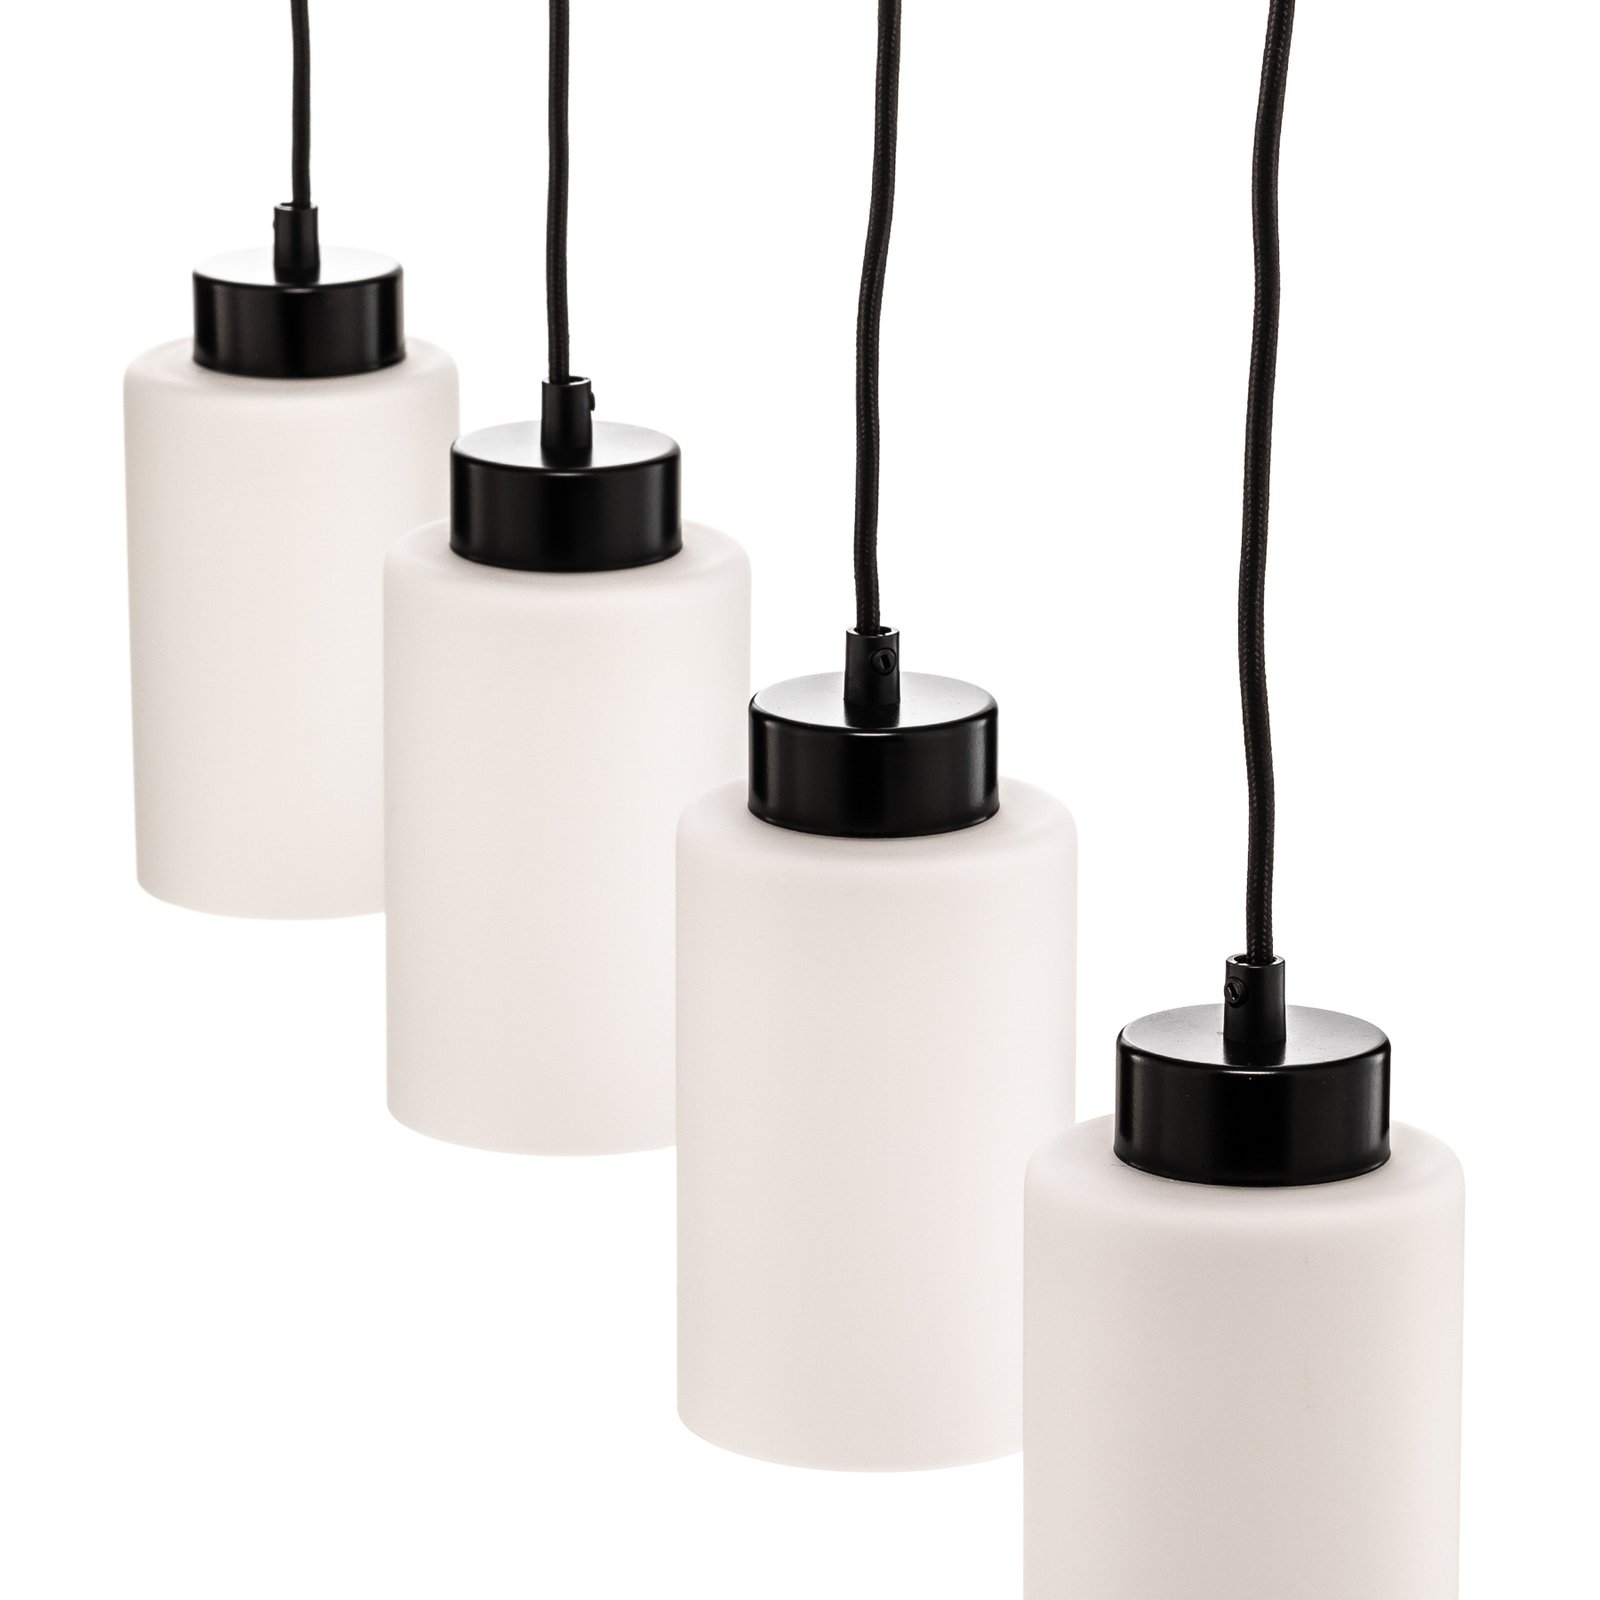 Hanglamp Vitrio, 4-lamps, langwerpig, zwart/wit